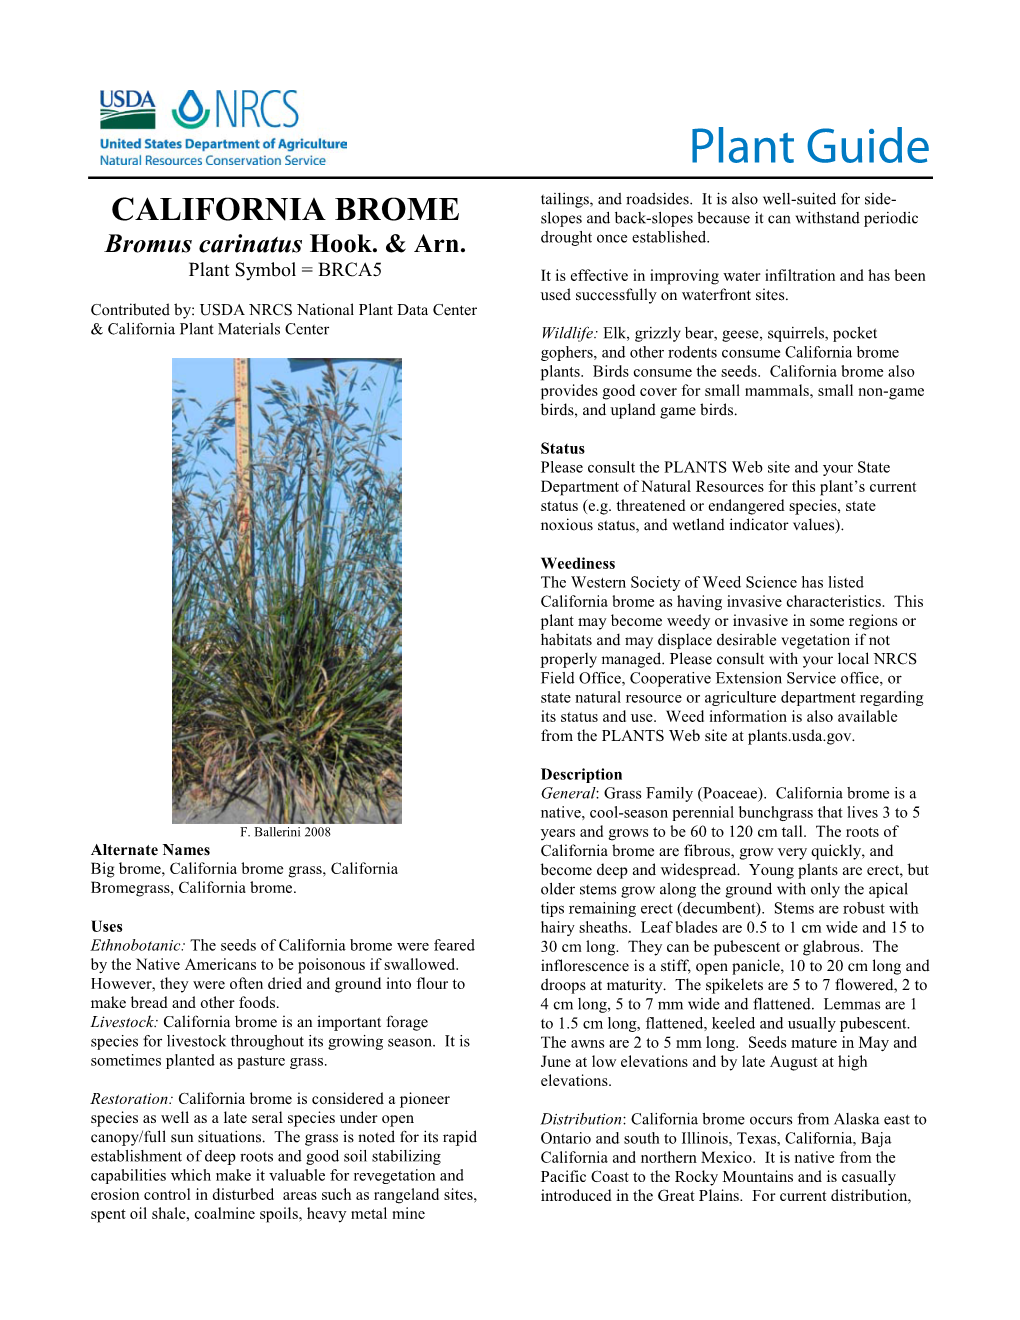 CALIFORNIA BROME Plant Guide